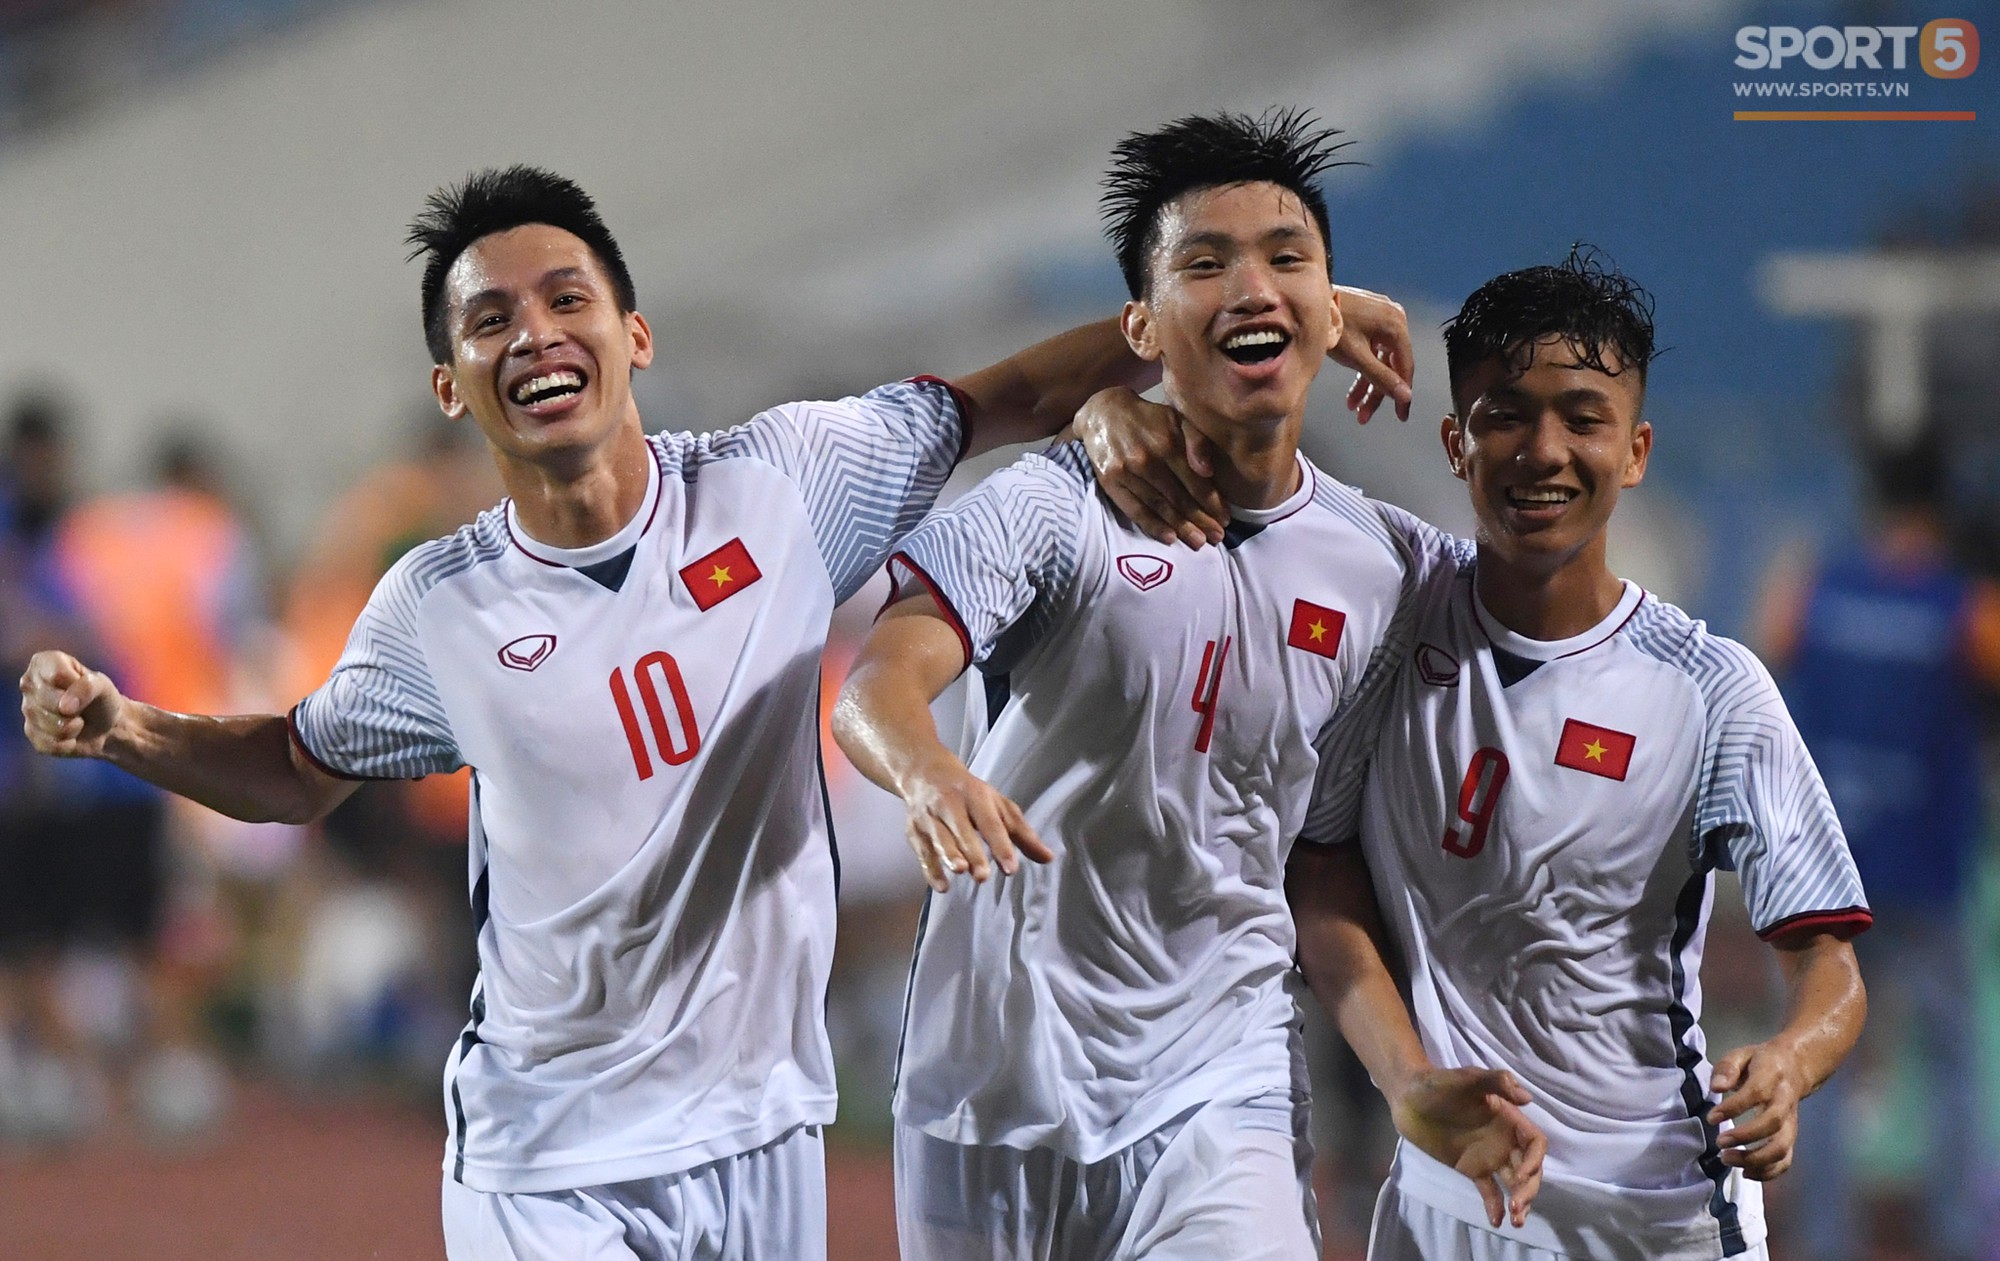 Cầu thủ U23 Việt Nam cảm ơn khán giả sau khi vô địch sớm Cup Tứ Hùng - Ảnh 3.